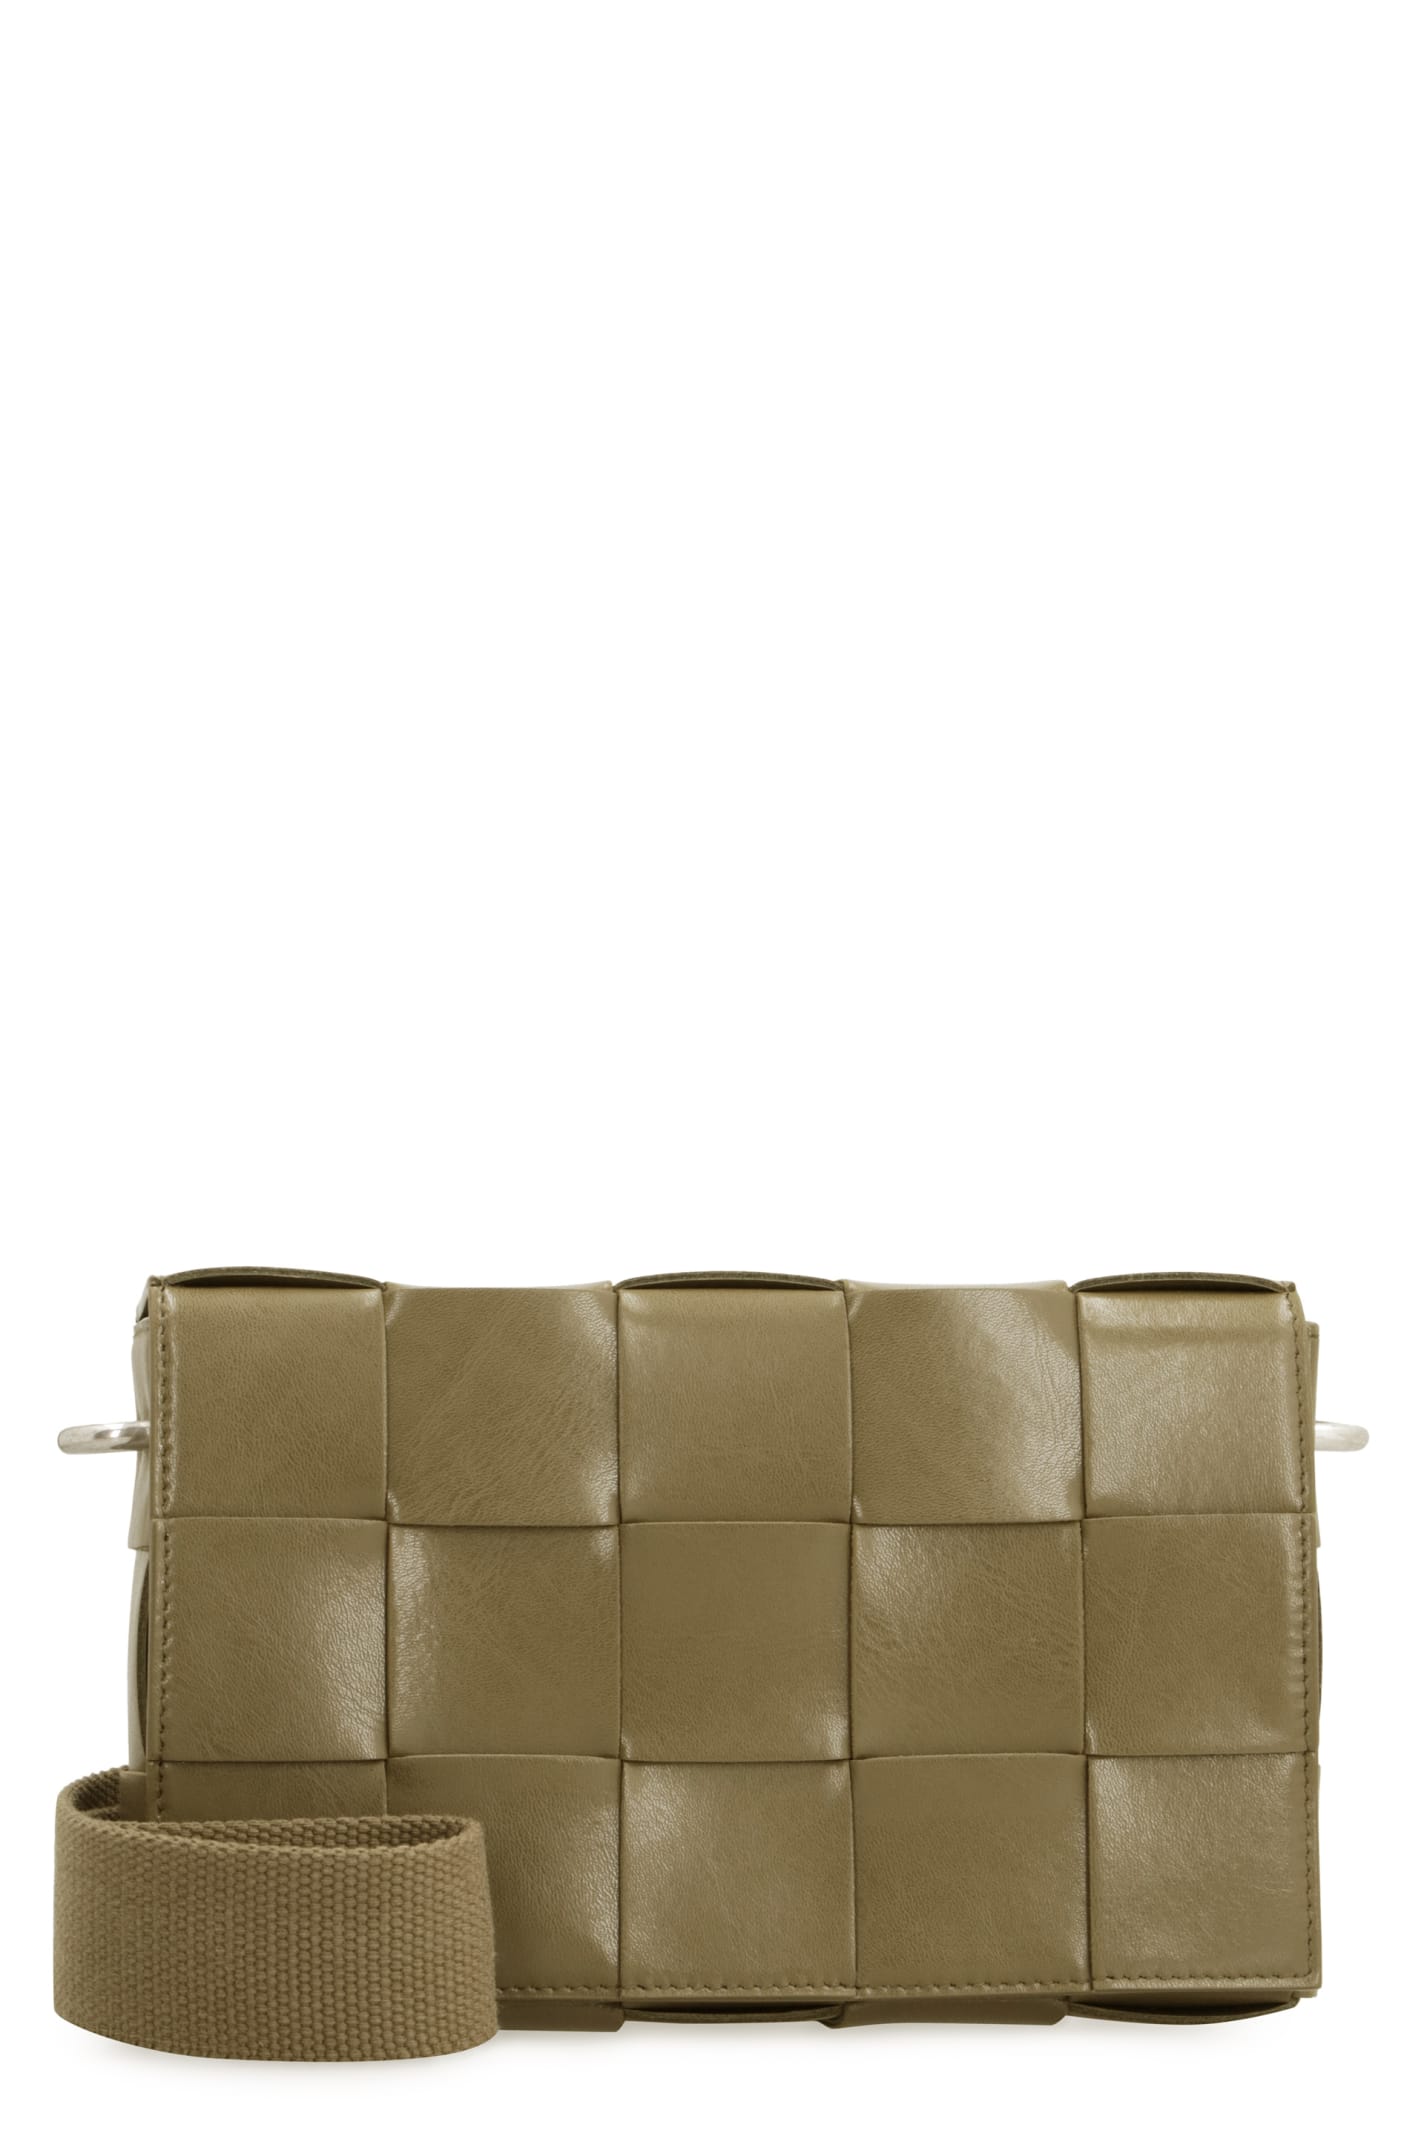 Bottega Veneta Cassette Leather Crossbody Bag In Brown